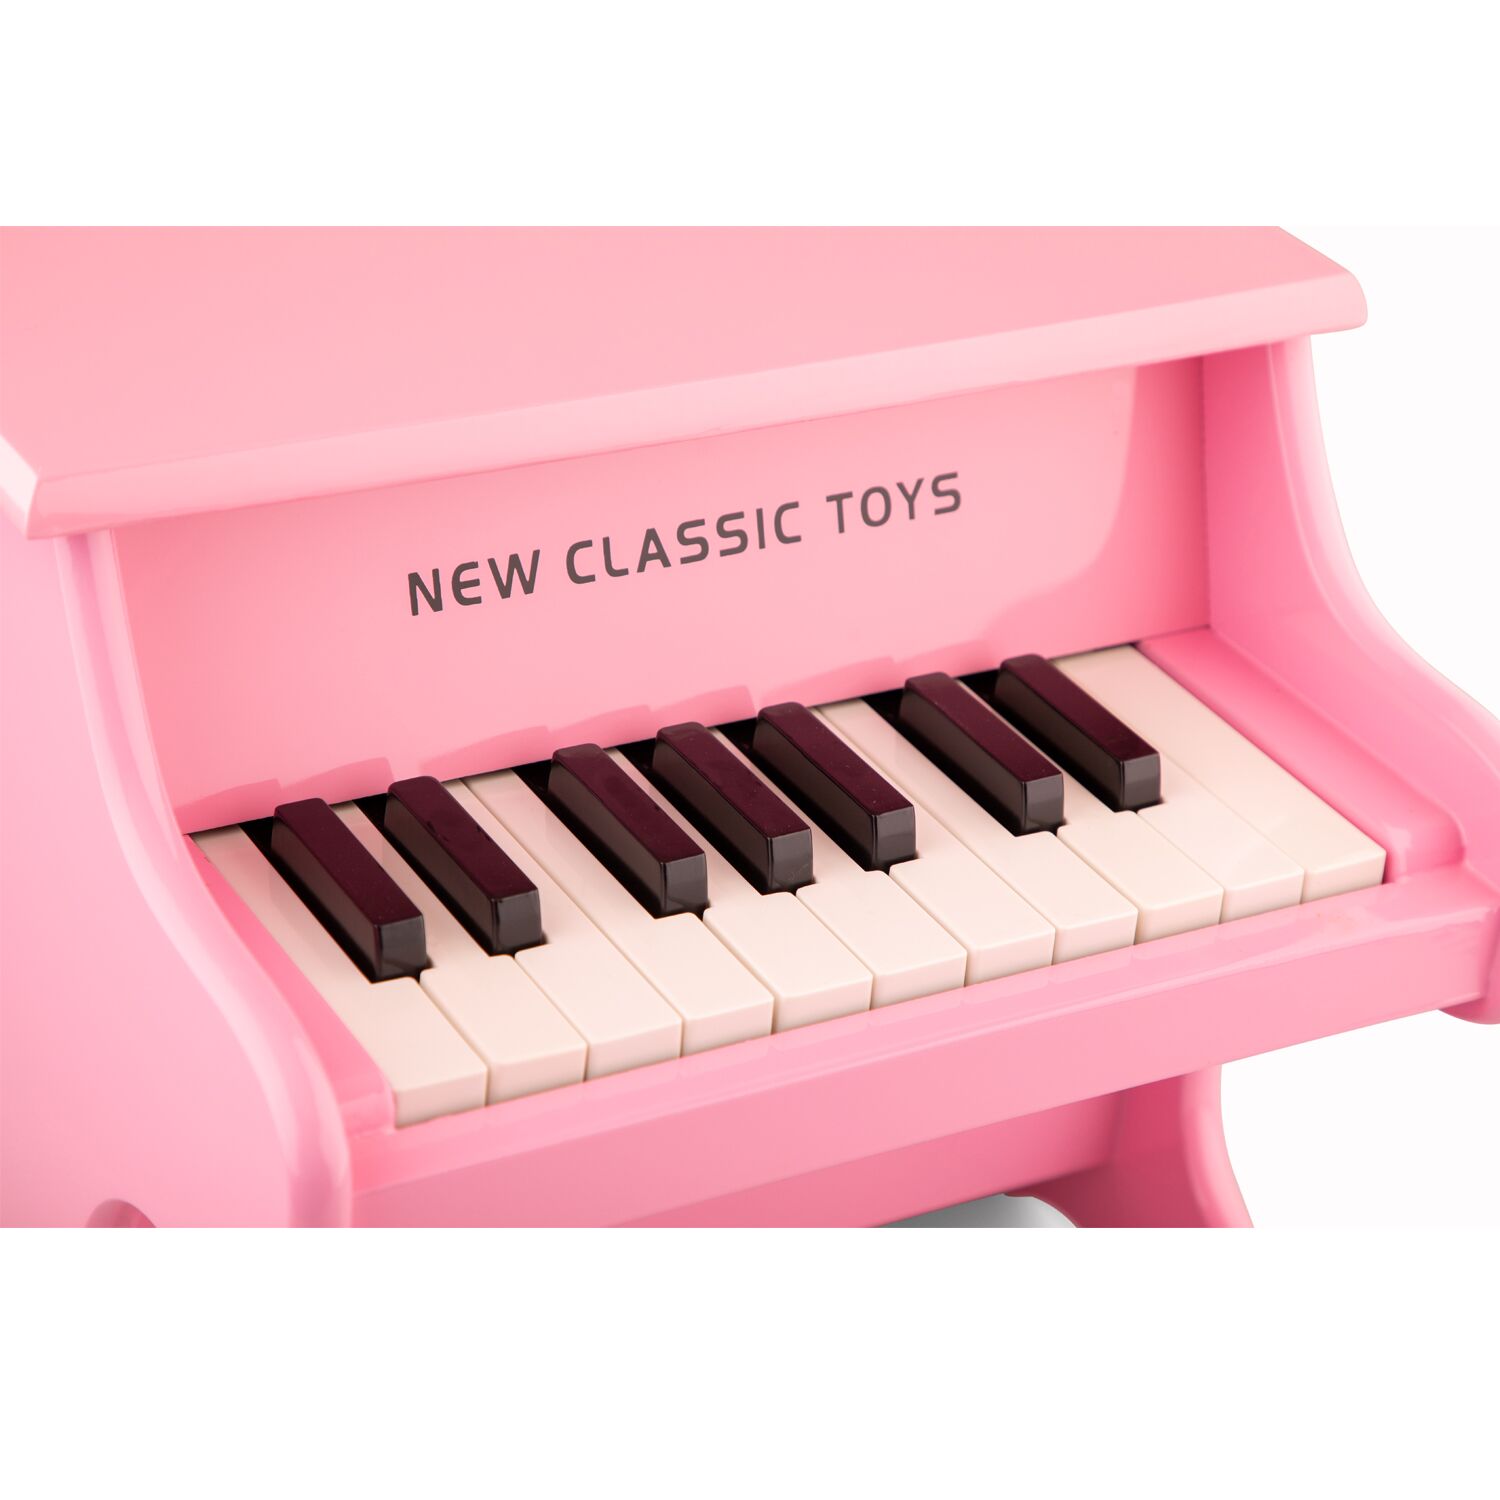 new classic toys e piano